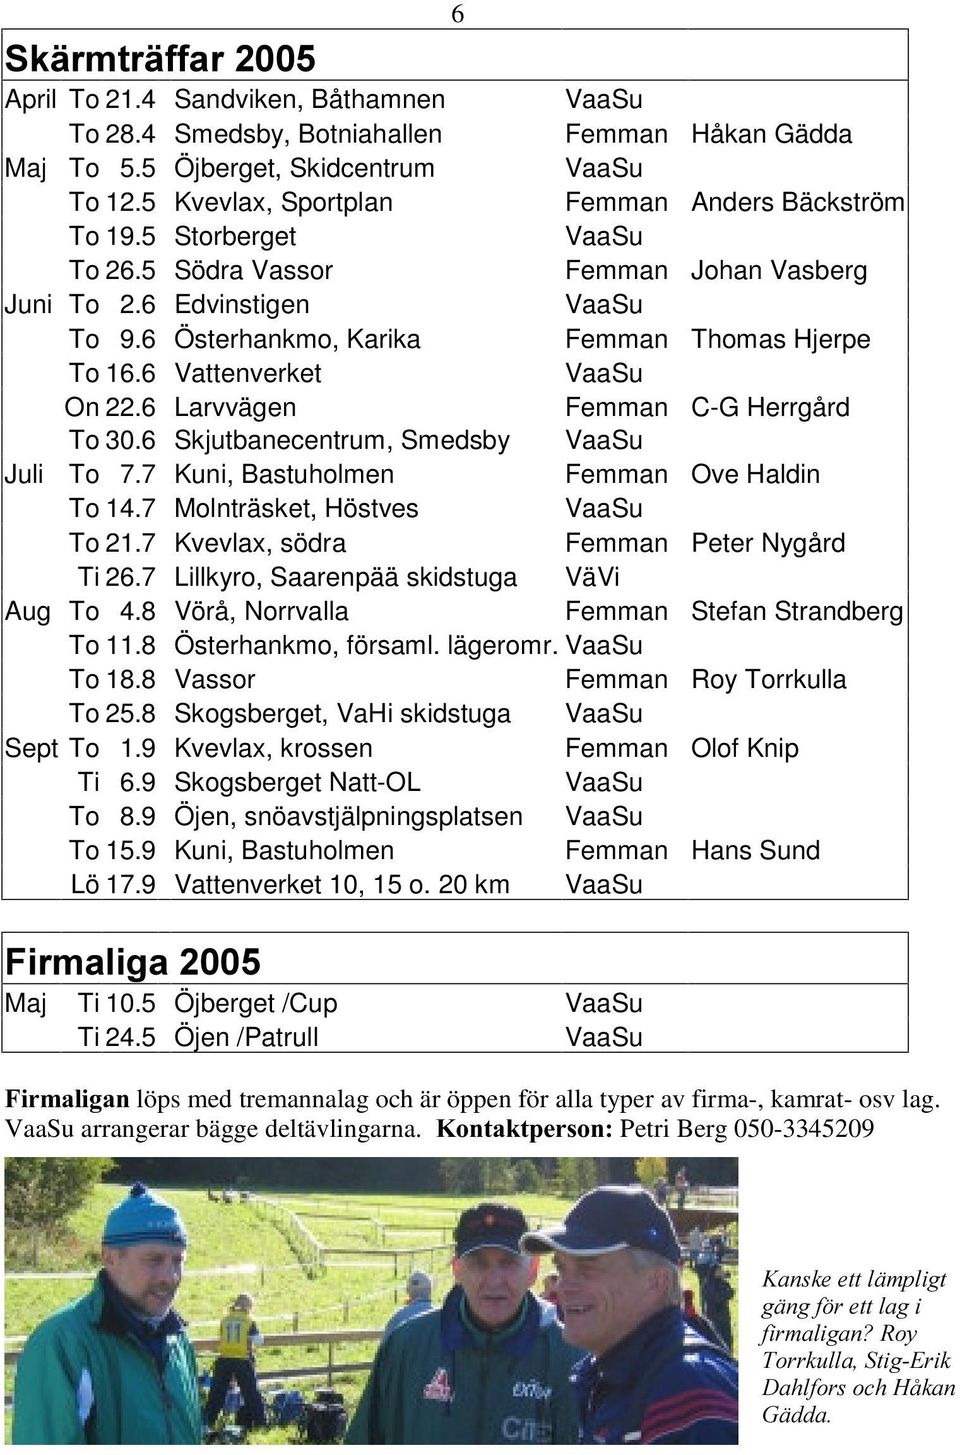 6 Vattenverket VaaSu On 22.6 Larvvägen Femman C-G Herrgård To 30.6 Skjutbanecentrum, Smedsby VaaSu Juli To 7.7 Kuni, Bastuholmen Femman Ove Haldin To 14.7 Molnträsket, Höstves VaaSu To 21.